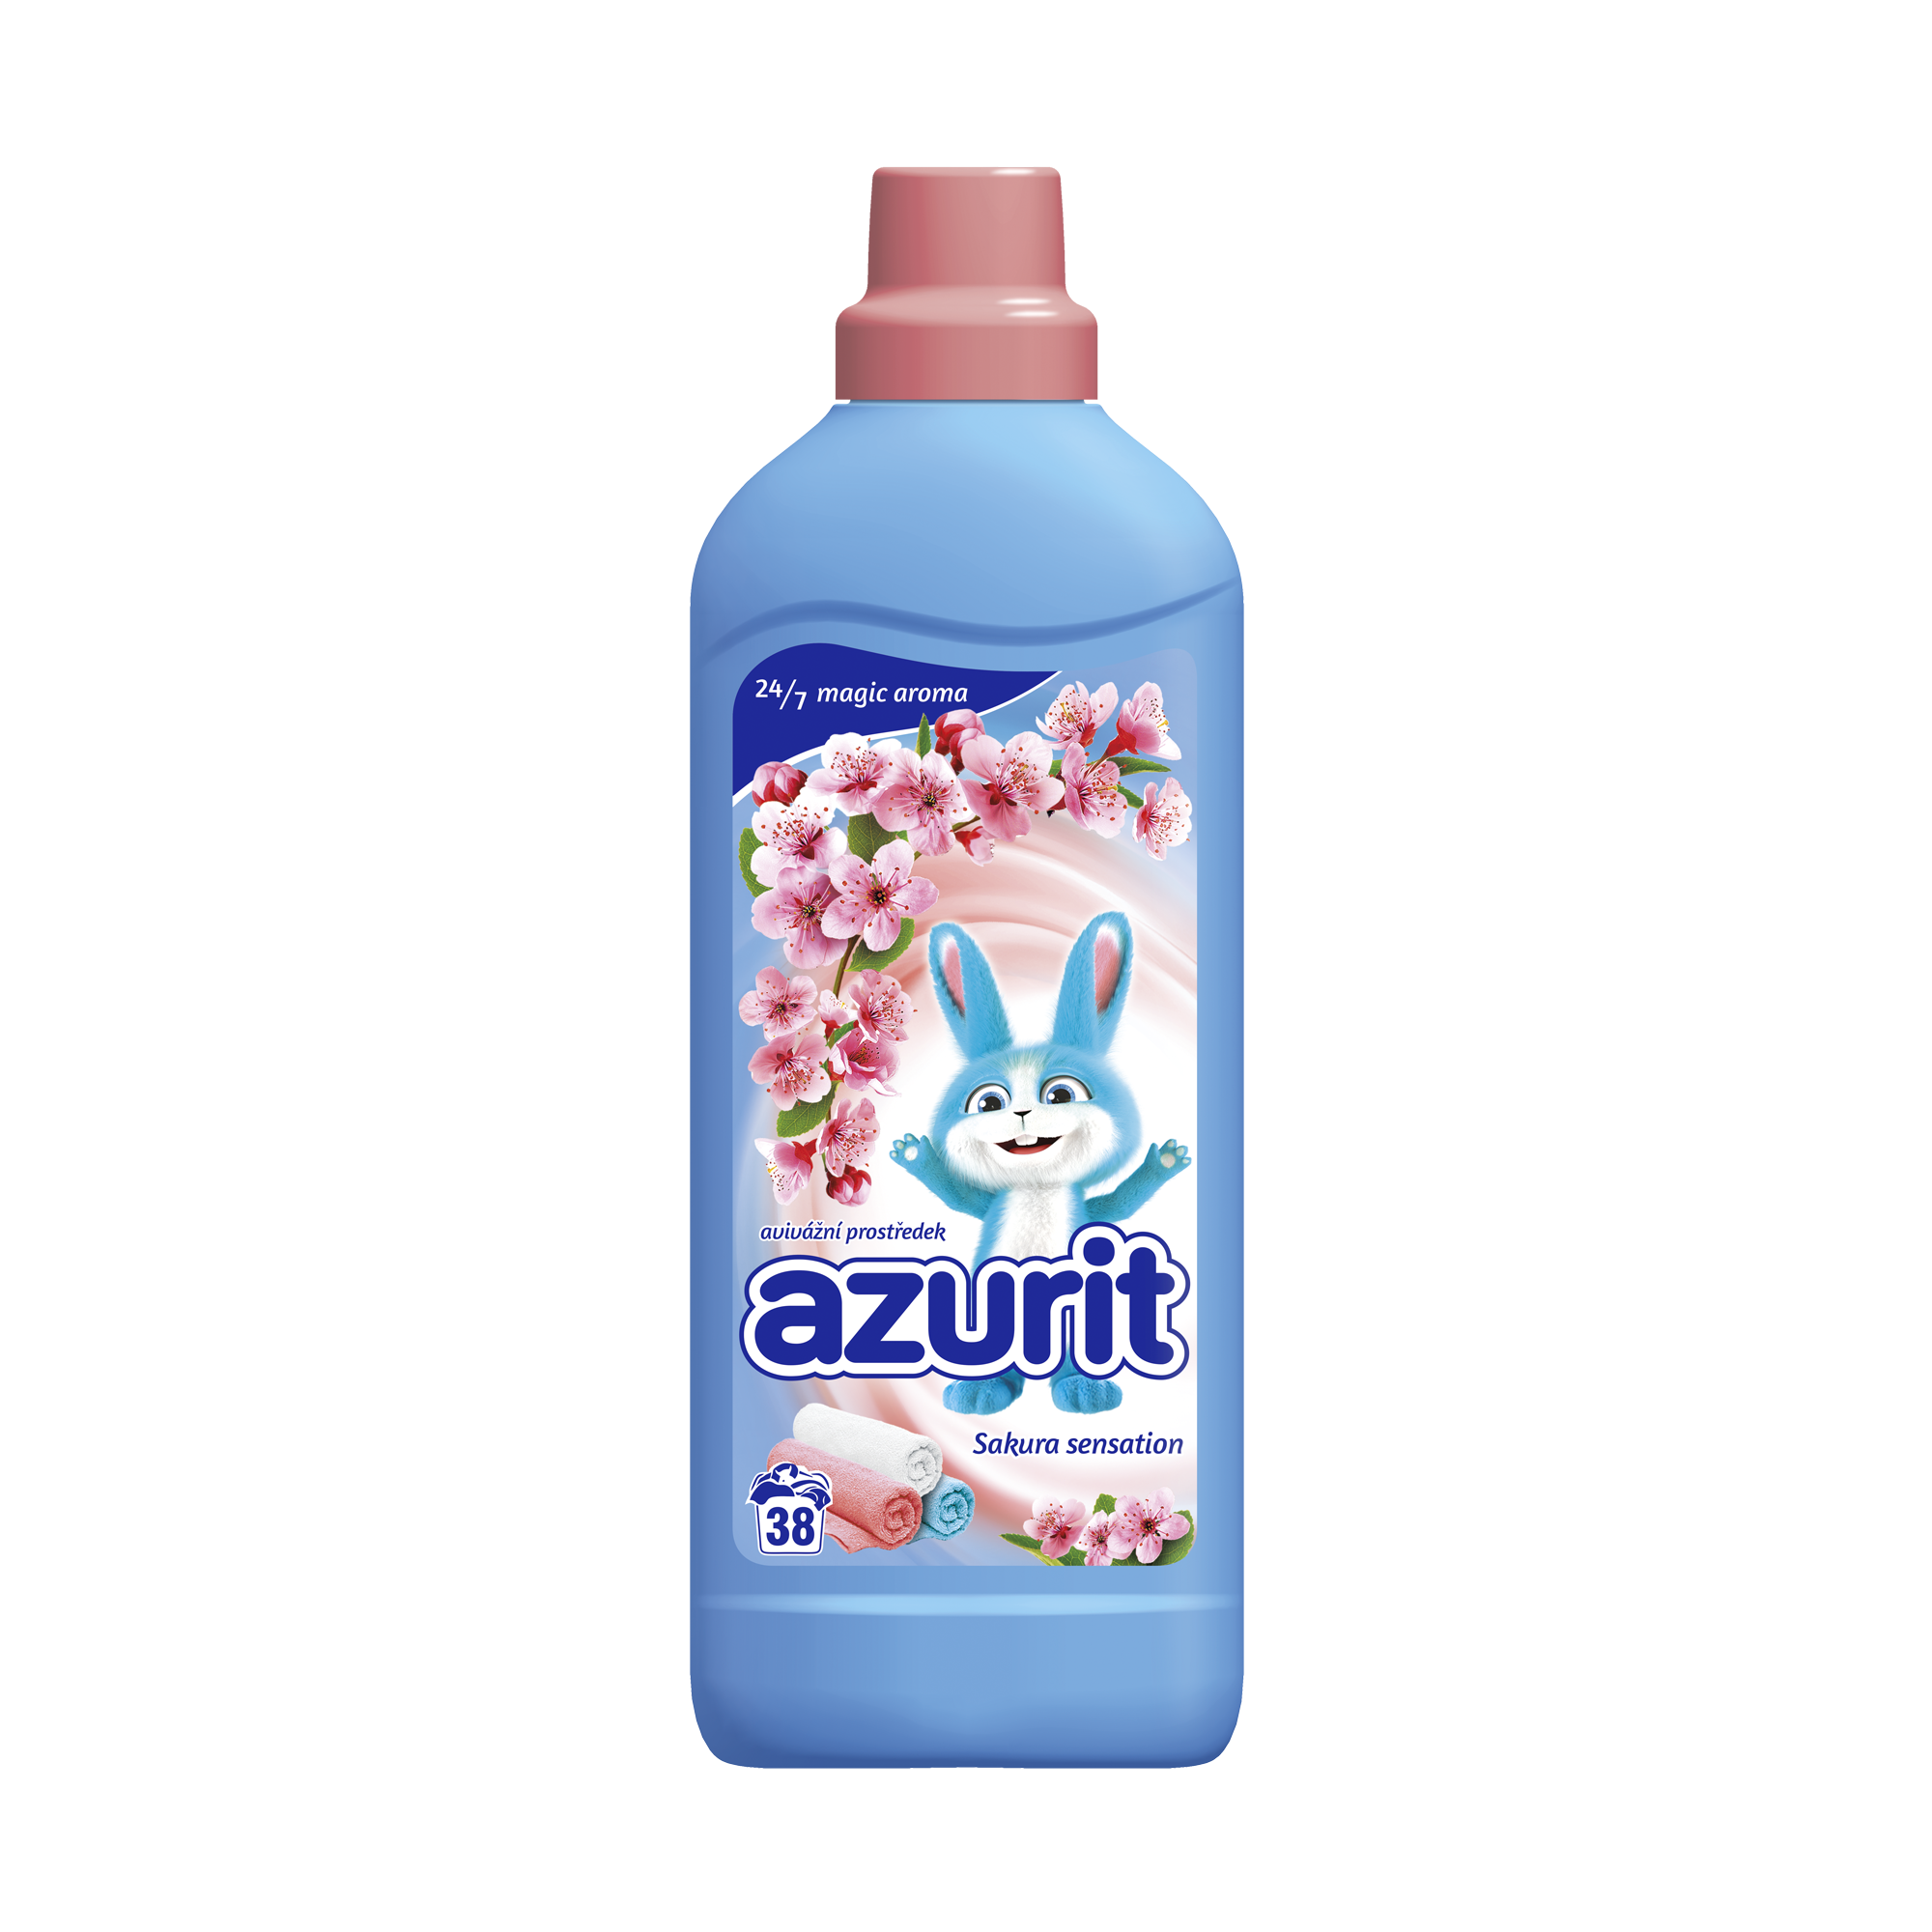 Azurit avivážní prostředek Sakura sensation